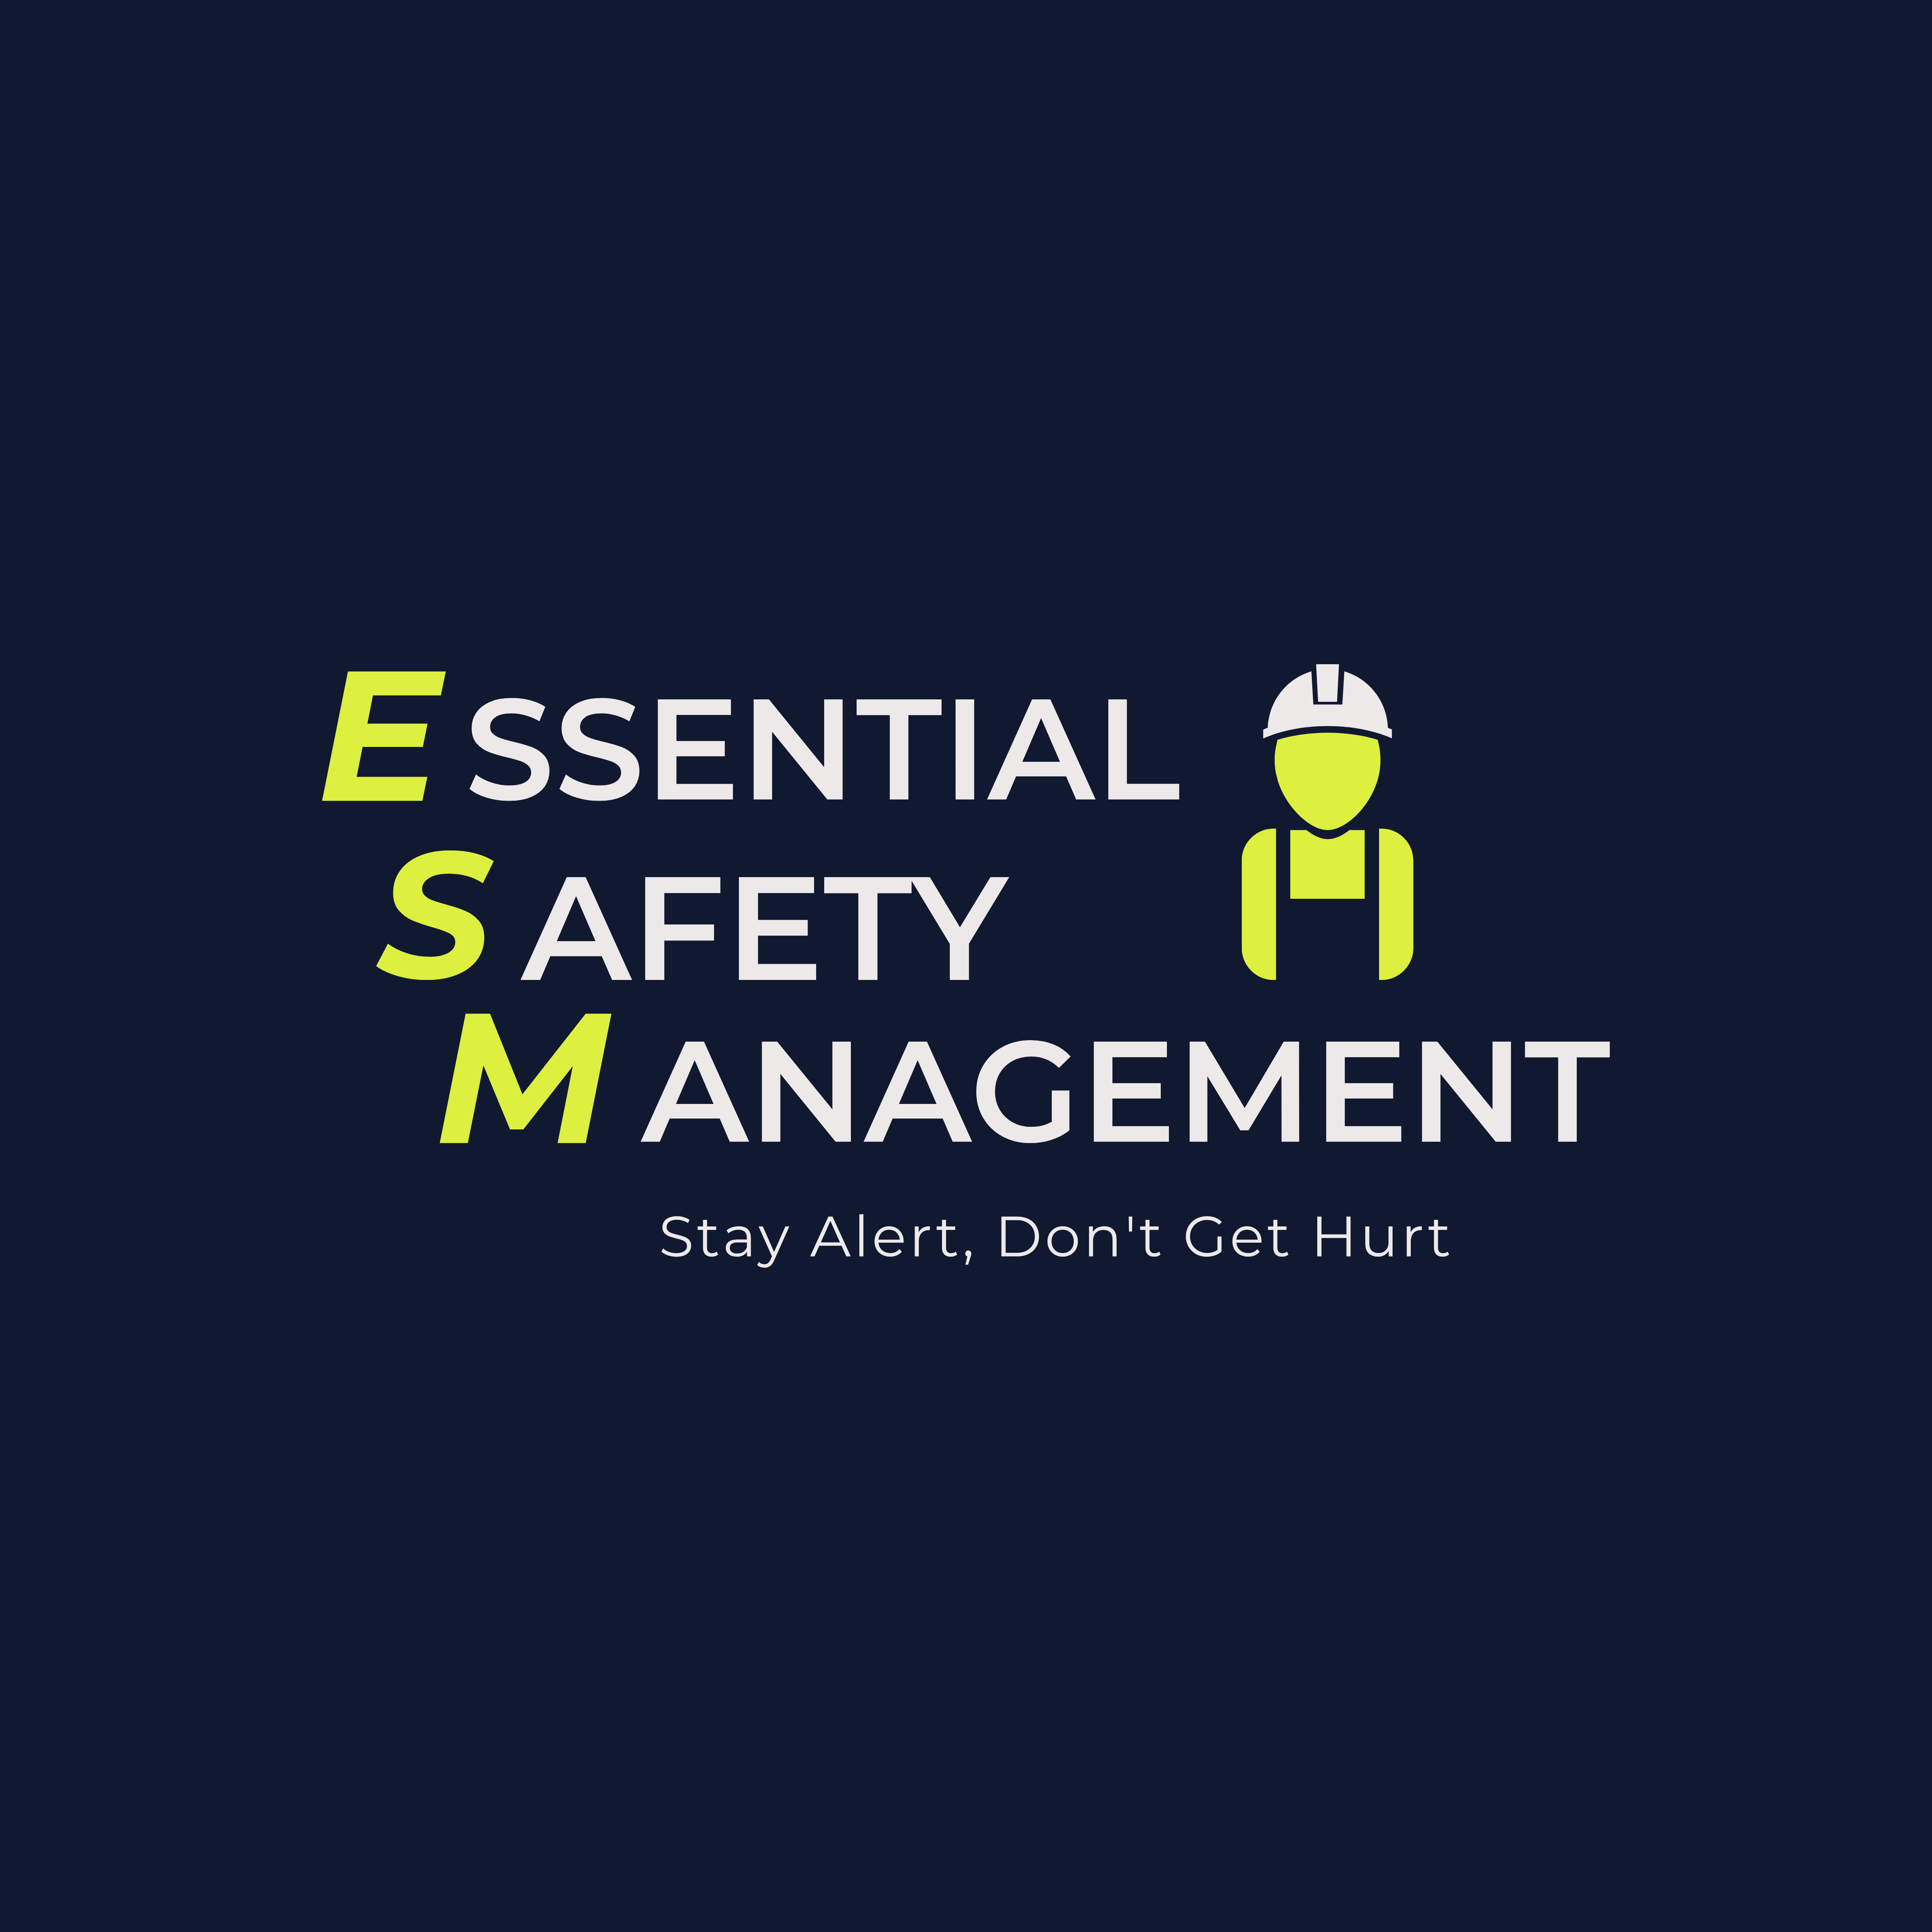 001 - Warehouse Safety Checklist